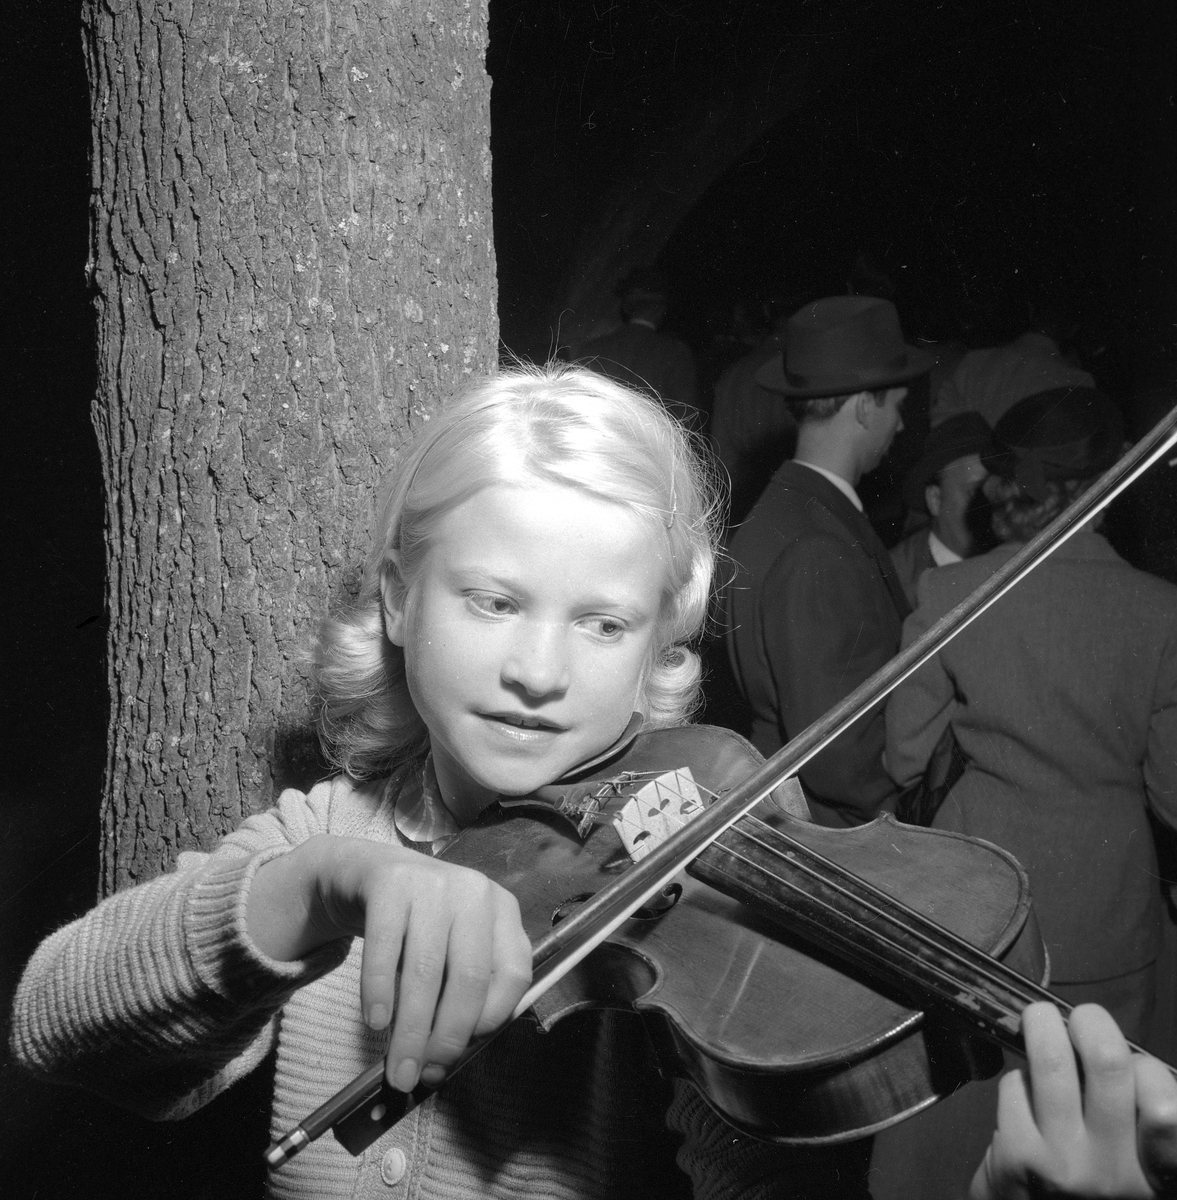 ÖK:s trivselkväll, final.
Augusti 1956.